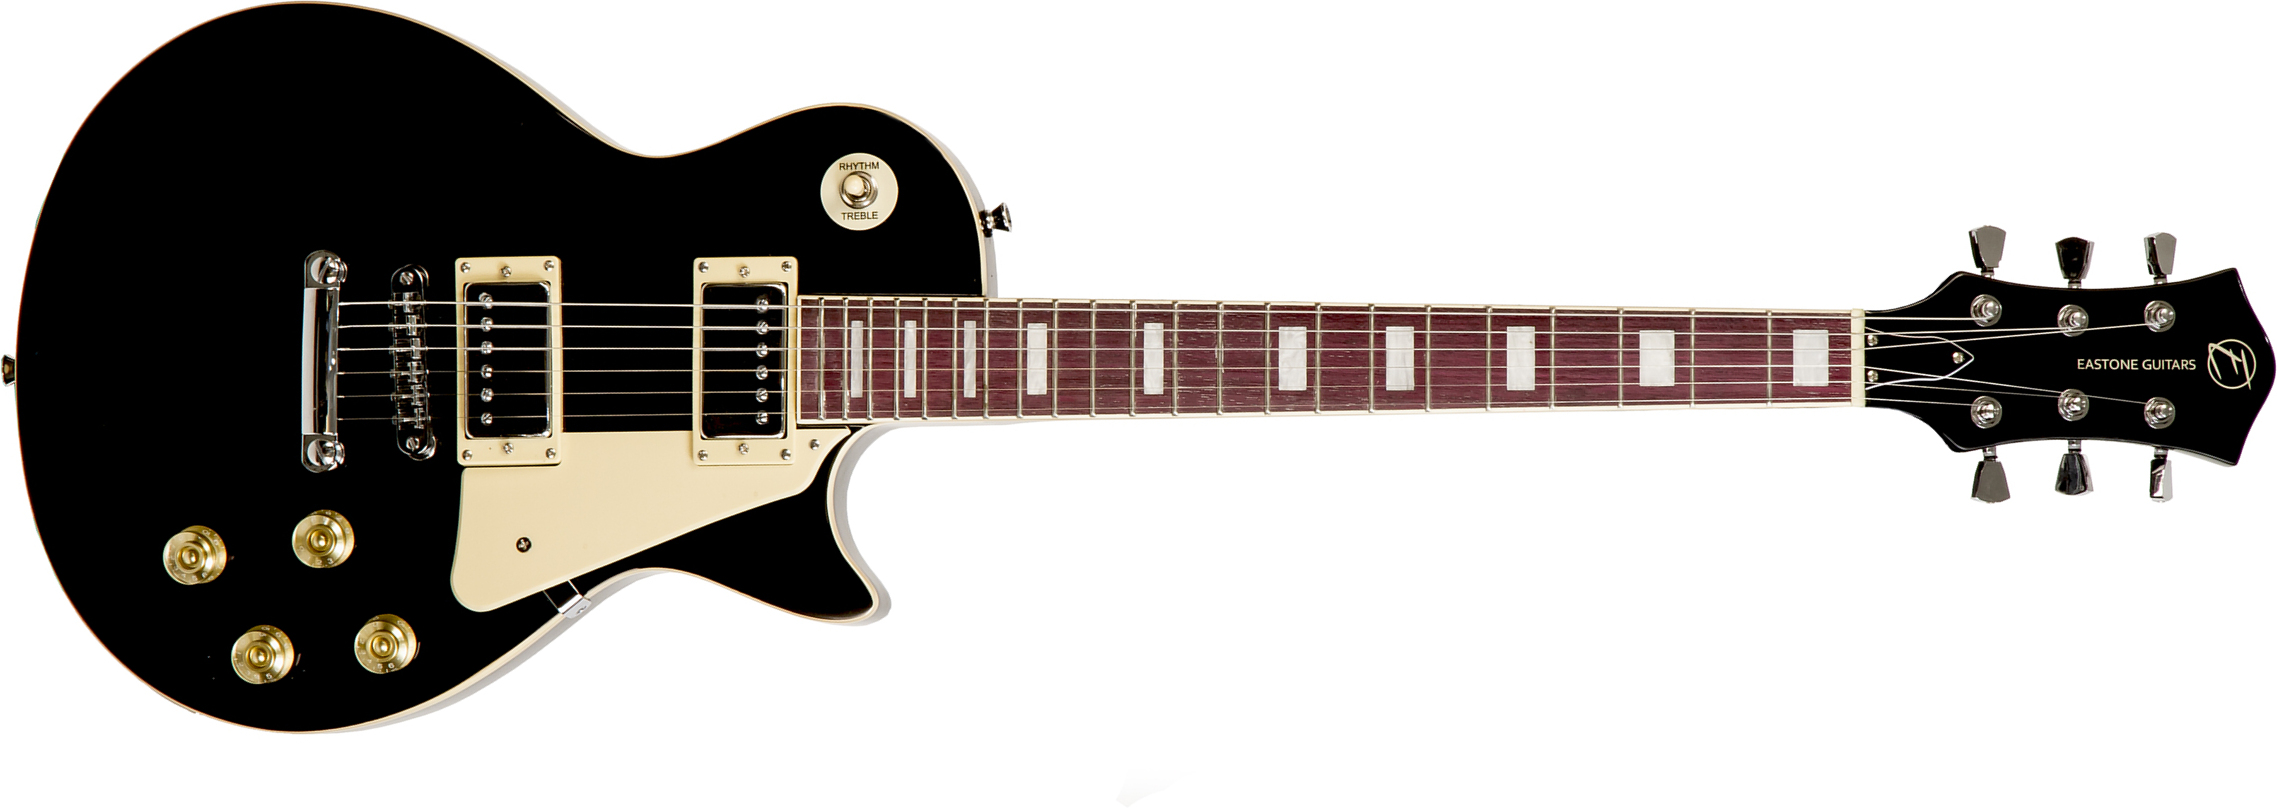 Eastone Lp100 Blk Hh Ht Pur - Black - Enkel gesneden elektrische gitaar - Main picture